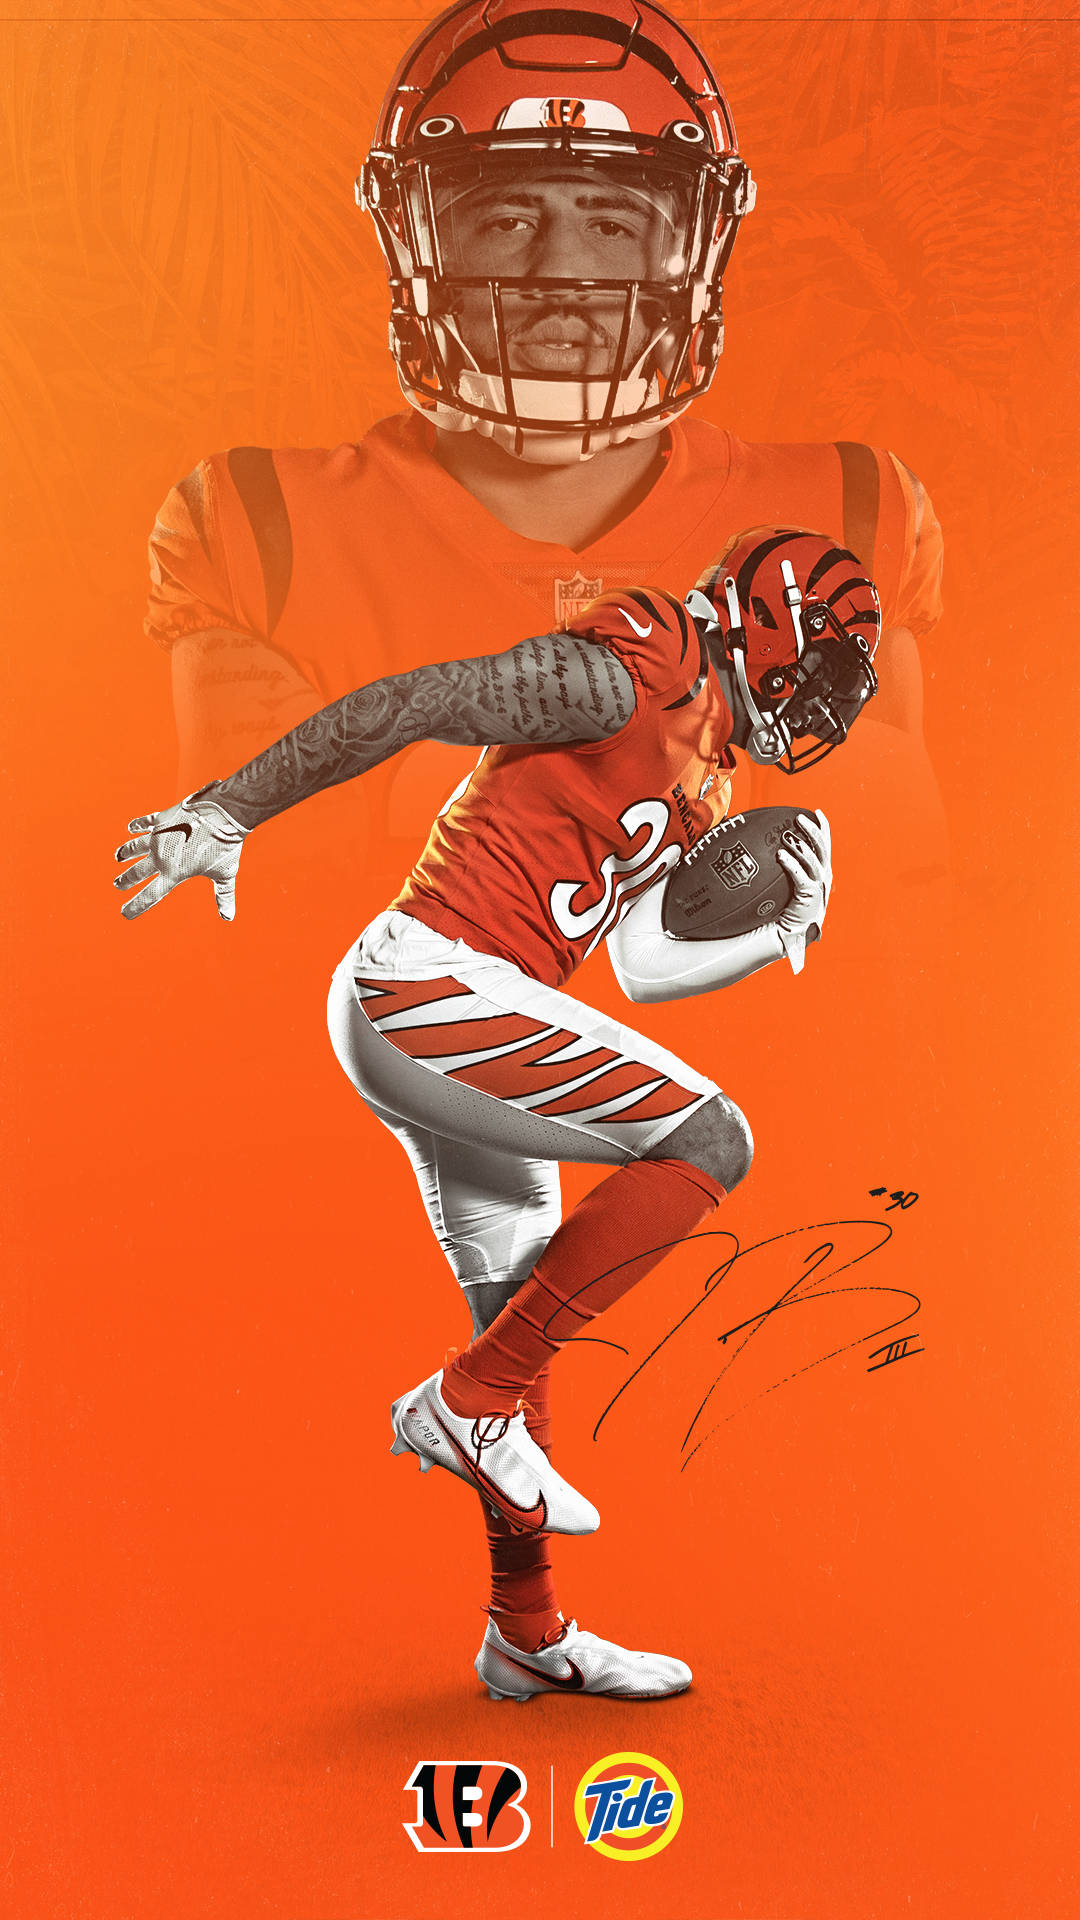 Cincinnati Bengals Orange Poster Background